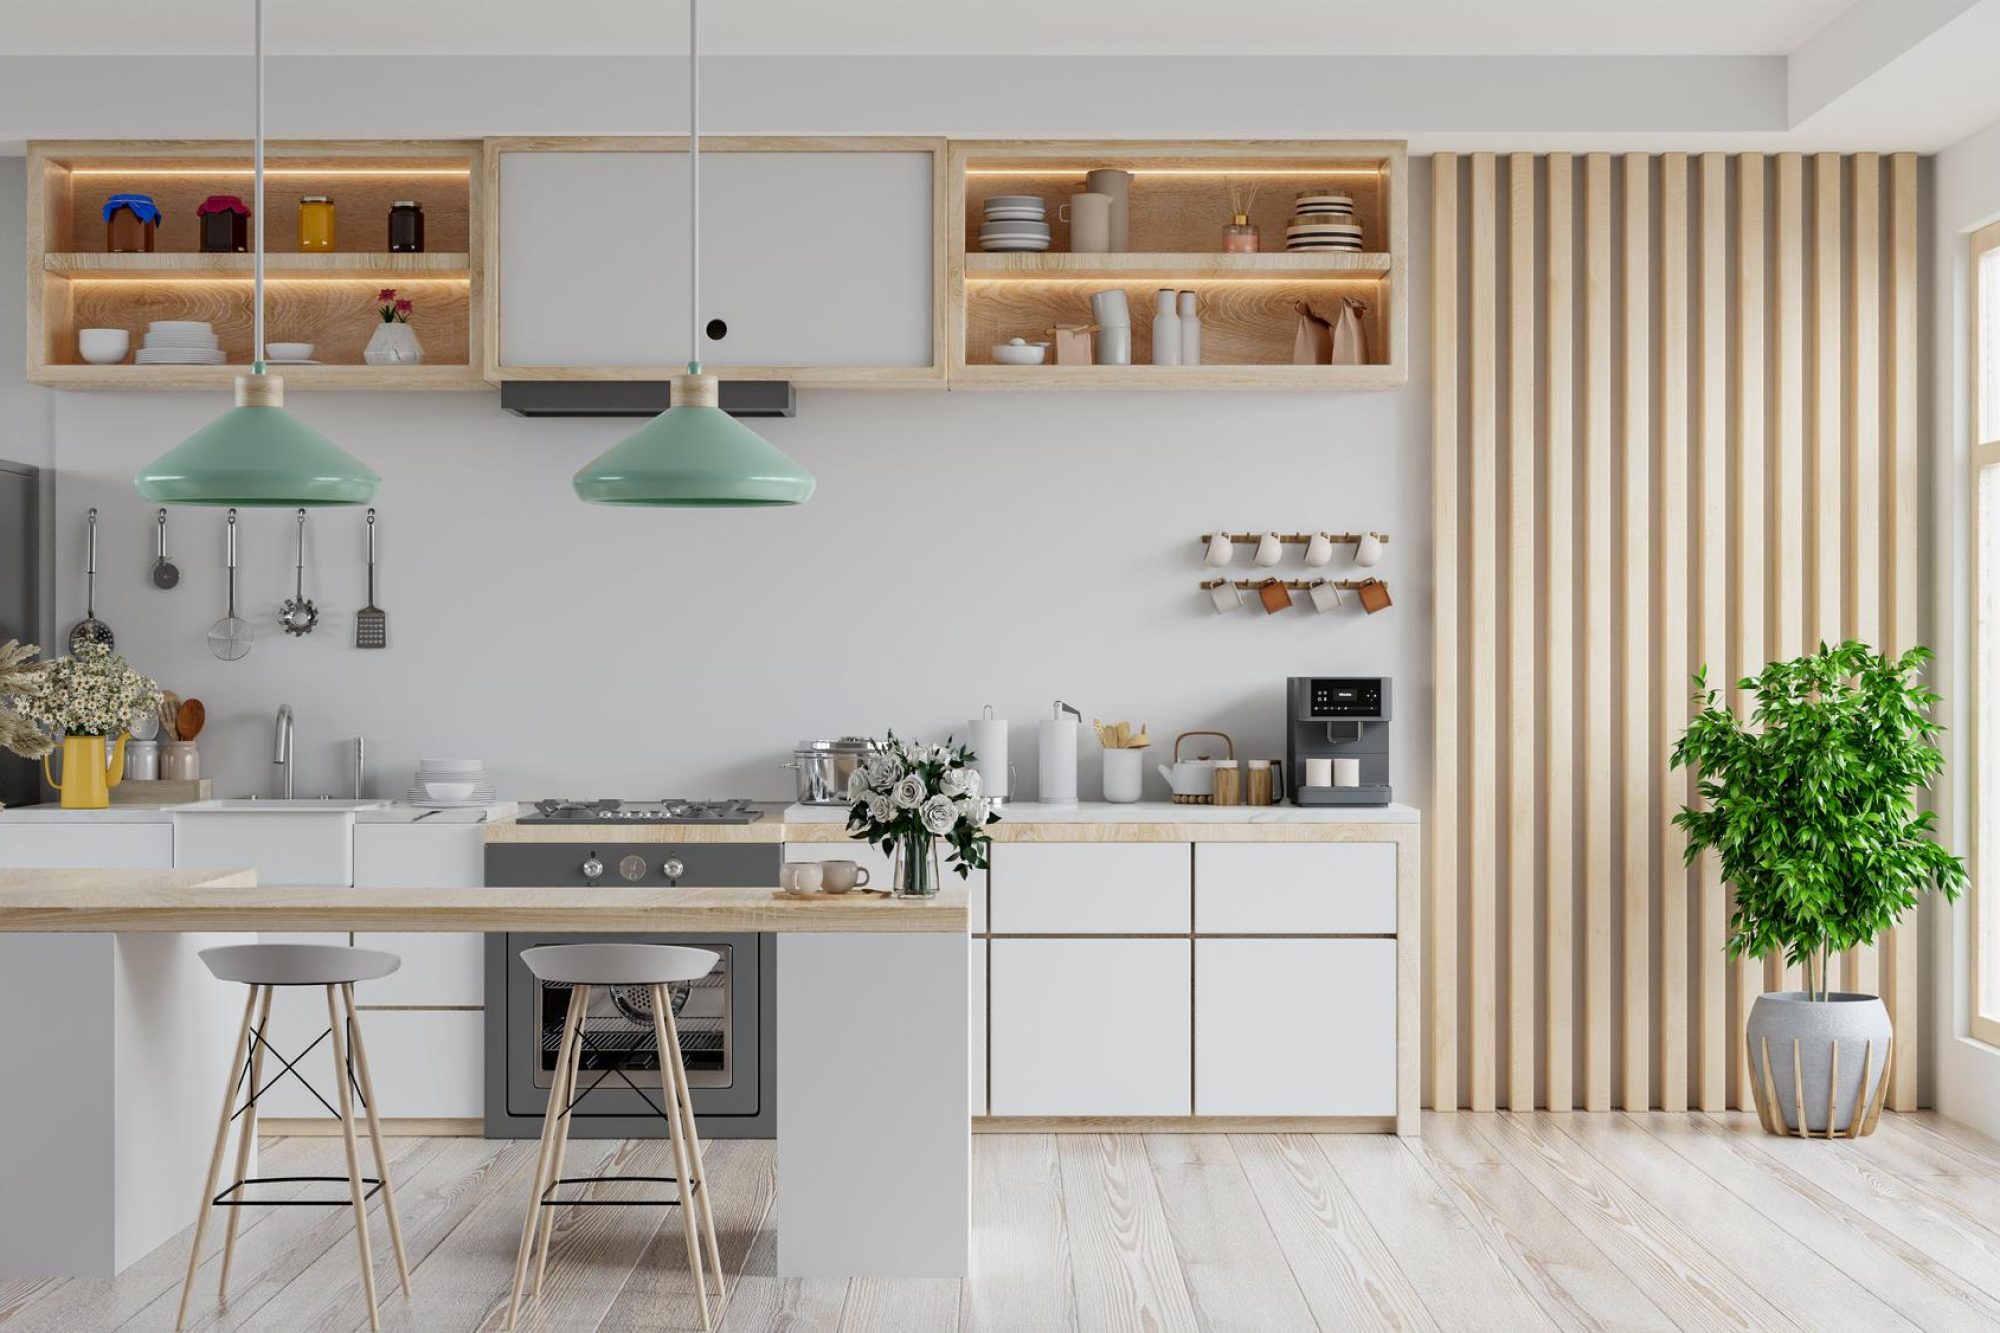 modern-white-kitchen-interior-with-furniturekitchen-interior-with-white-wall.jpg